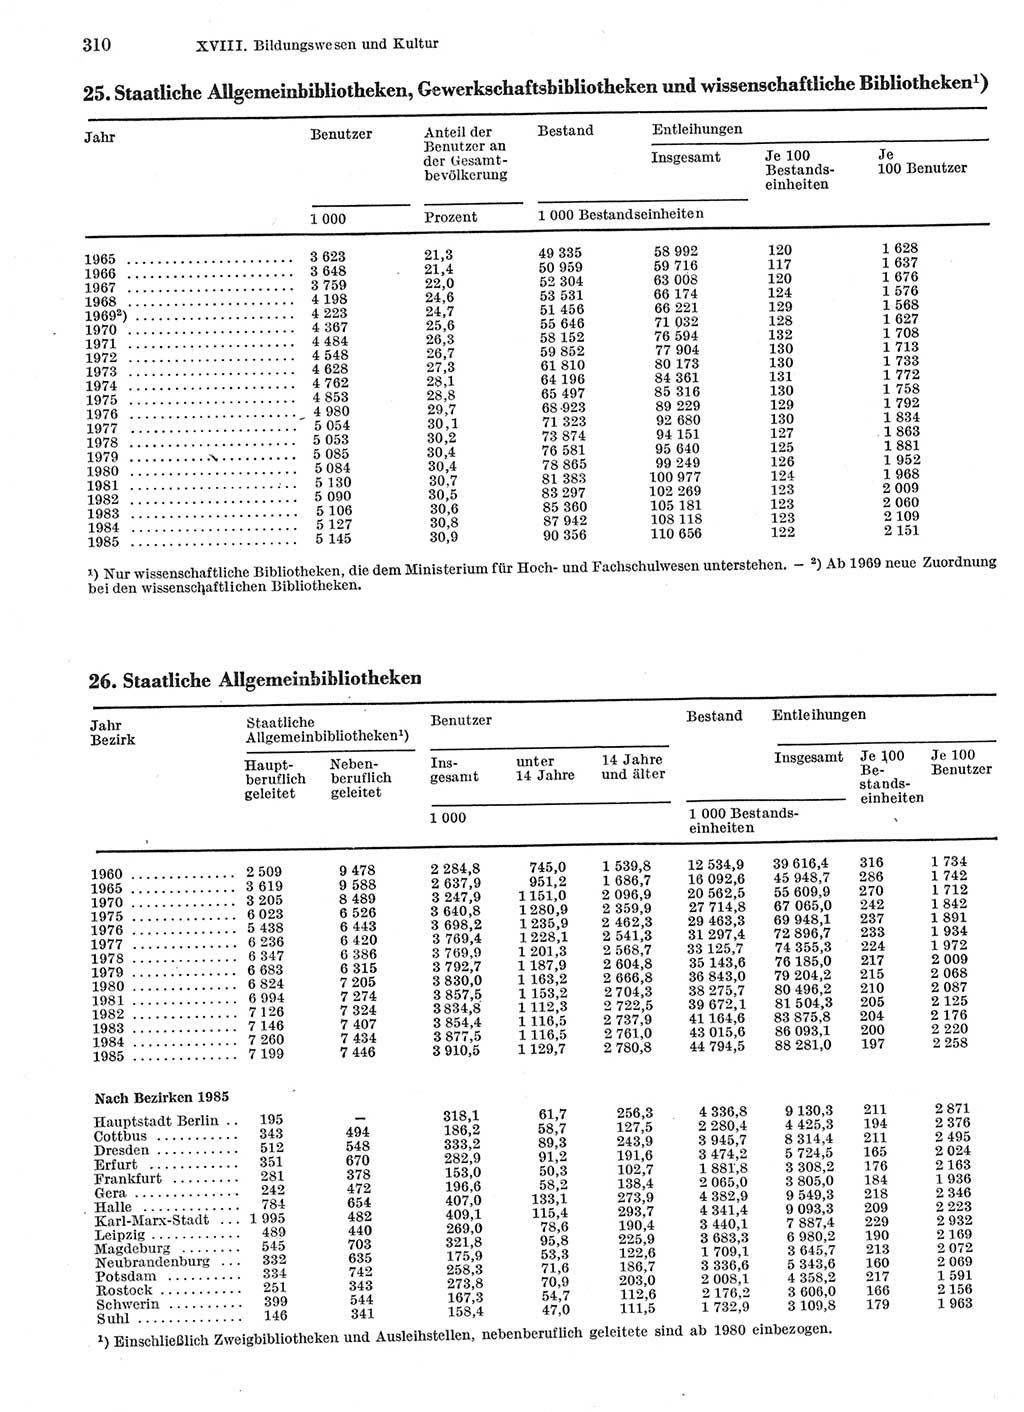 Statistisches Jahrbuch der Deutschen Demokratischen Republik (DDR) 1986, Seite 310 (Stat. Jb. DDR 1986, S. 310)